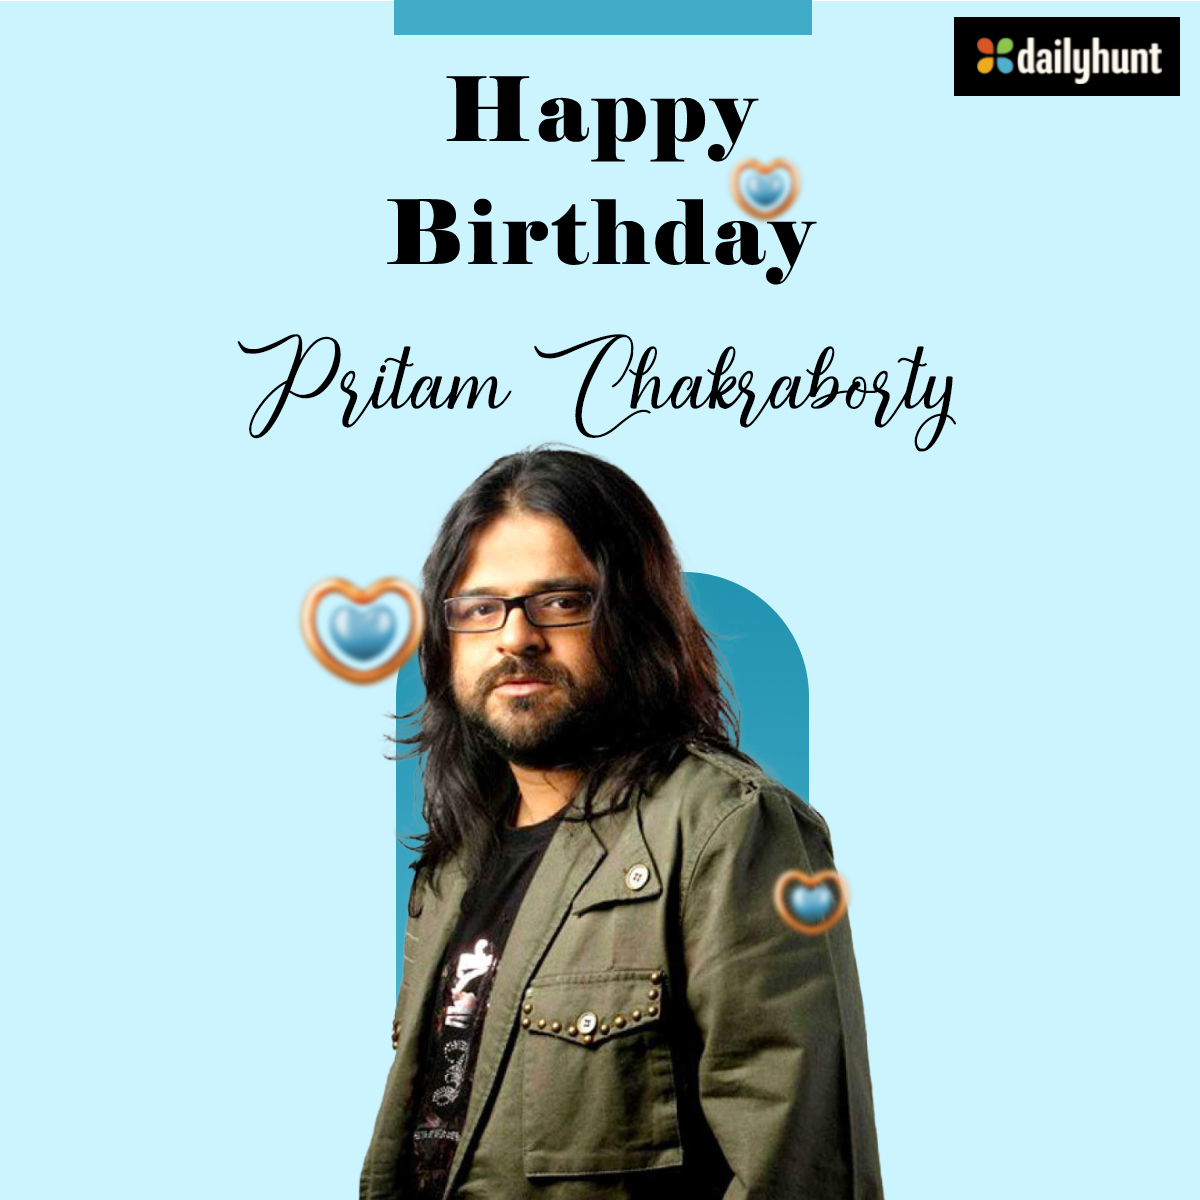 मशहूर संगीतकार, वादक और गायक #PritamChakraborty को जन्मदिन की ढेरों शुभकामनाएं 🎉🎂🎶🎵🎼❤️
@ipritamofficial 

#HappyBirthdayPritamChakraborty #HBDPritam #singer #music #composer #instrumentalist #Bollywood #Songs #birthdaywishes #dailyhunt